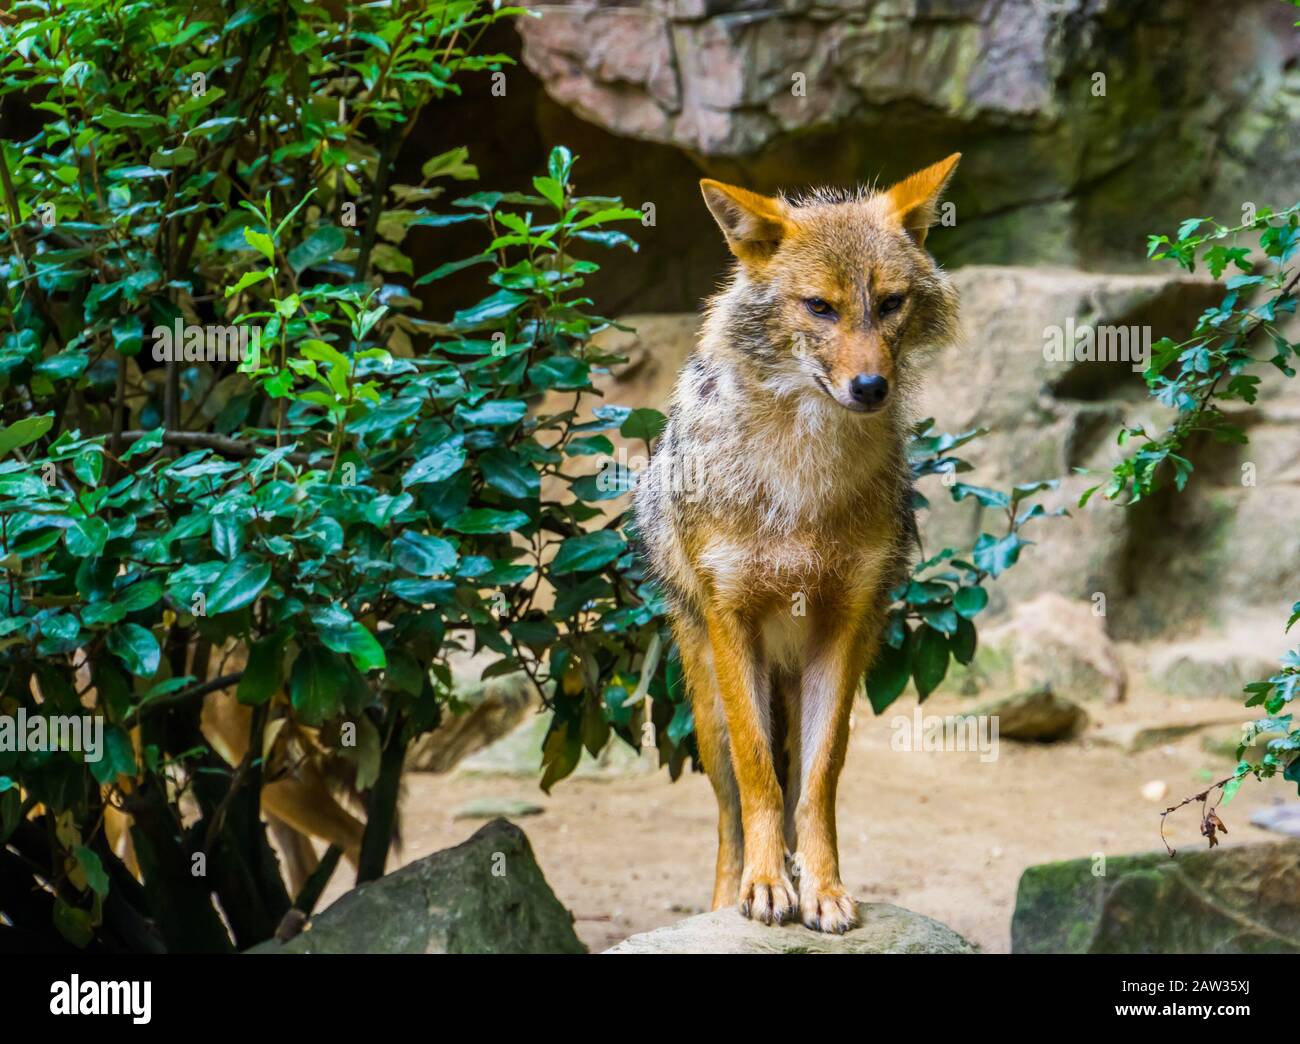 Golden jackal de pie en una roca, especia de perro salvaje de Eurasia Foto de stock